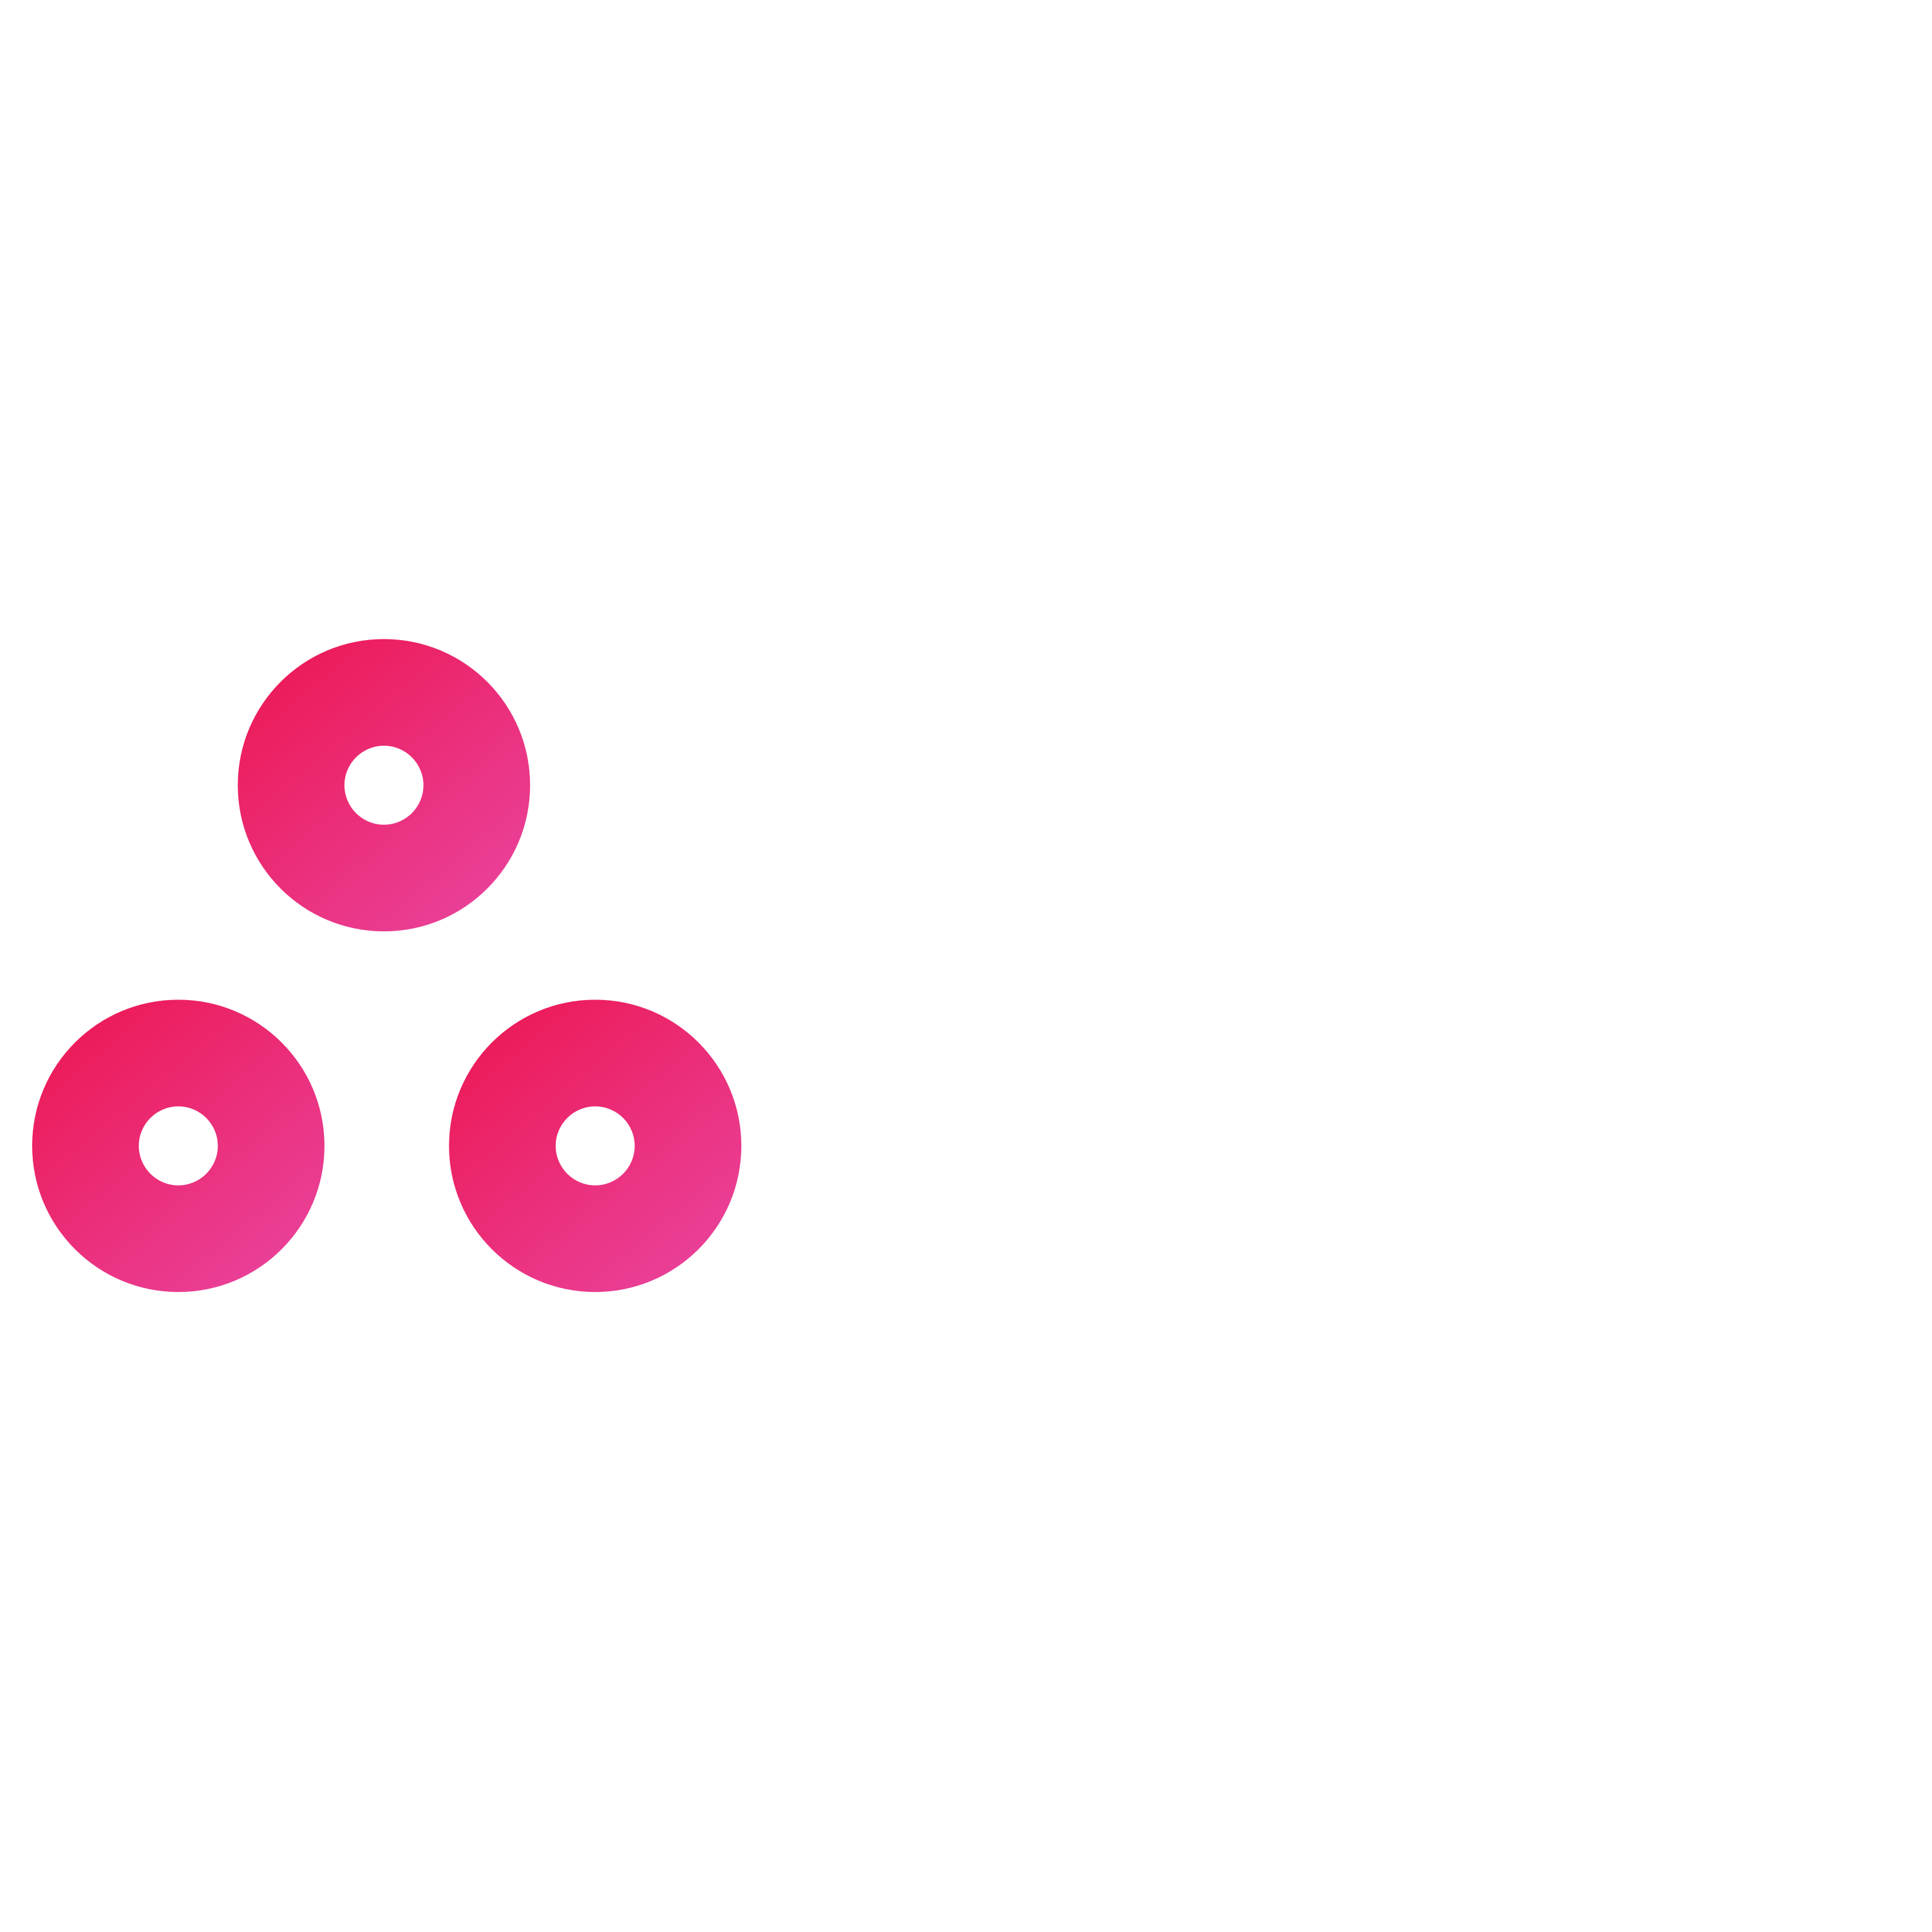 Bts Group Logo Transparent Picture